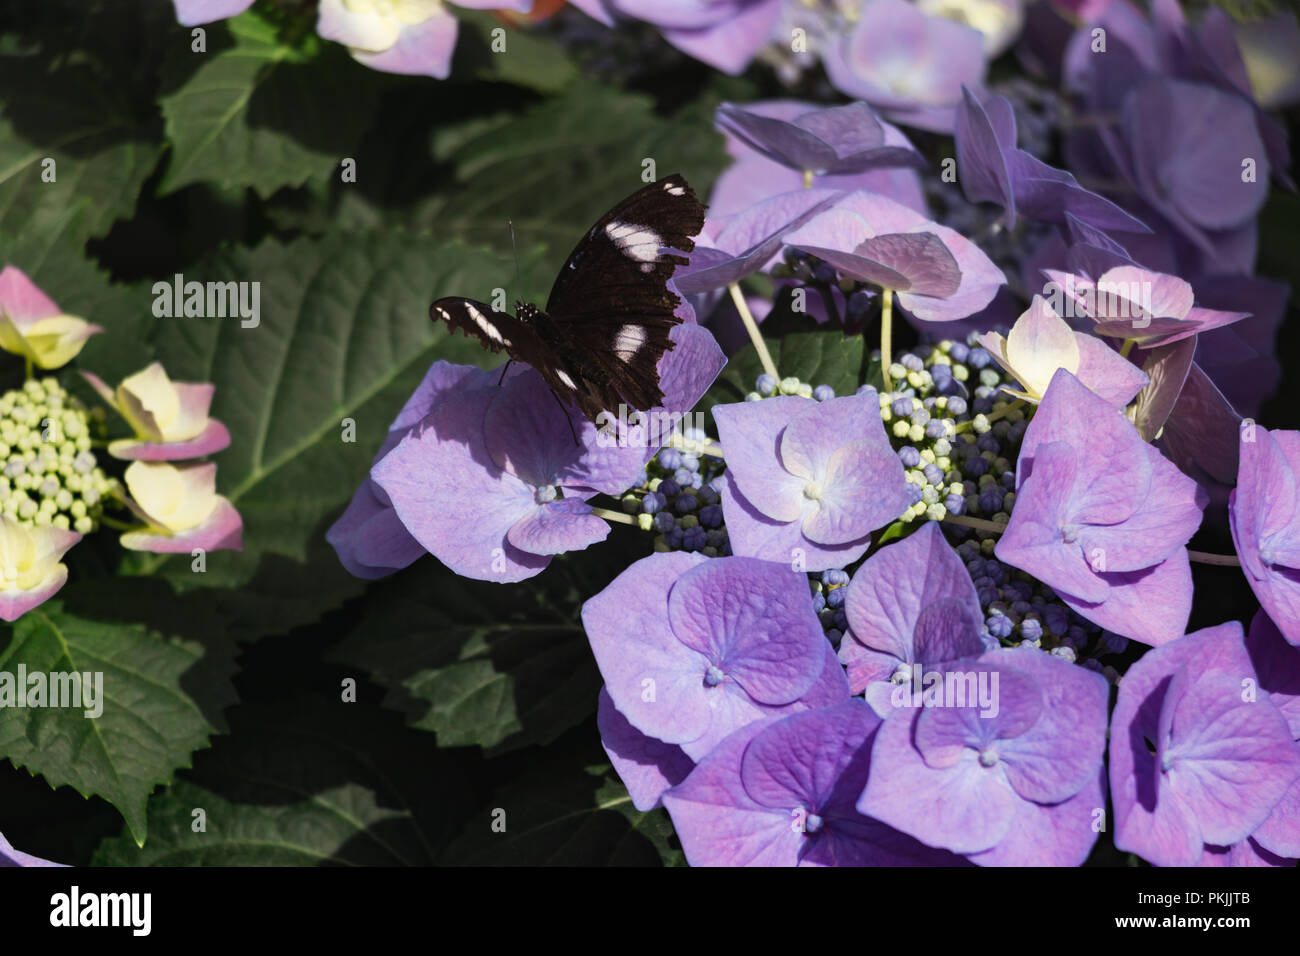 Schmetterling schwarz auf violett Hortensie Blume und grüne Blätter Stockfoto